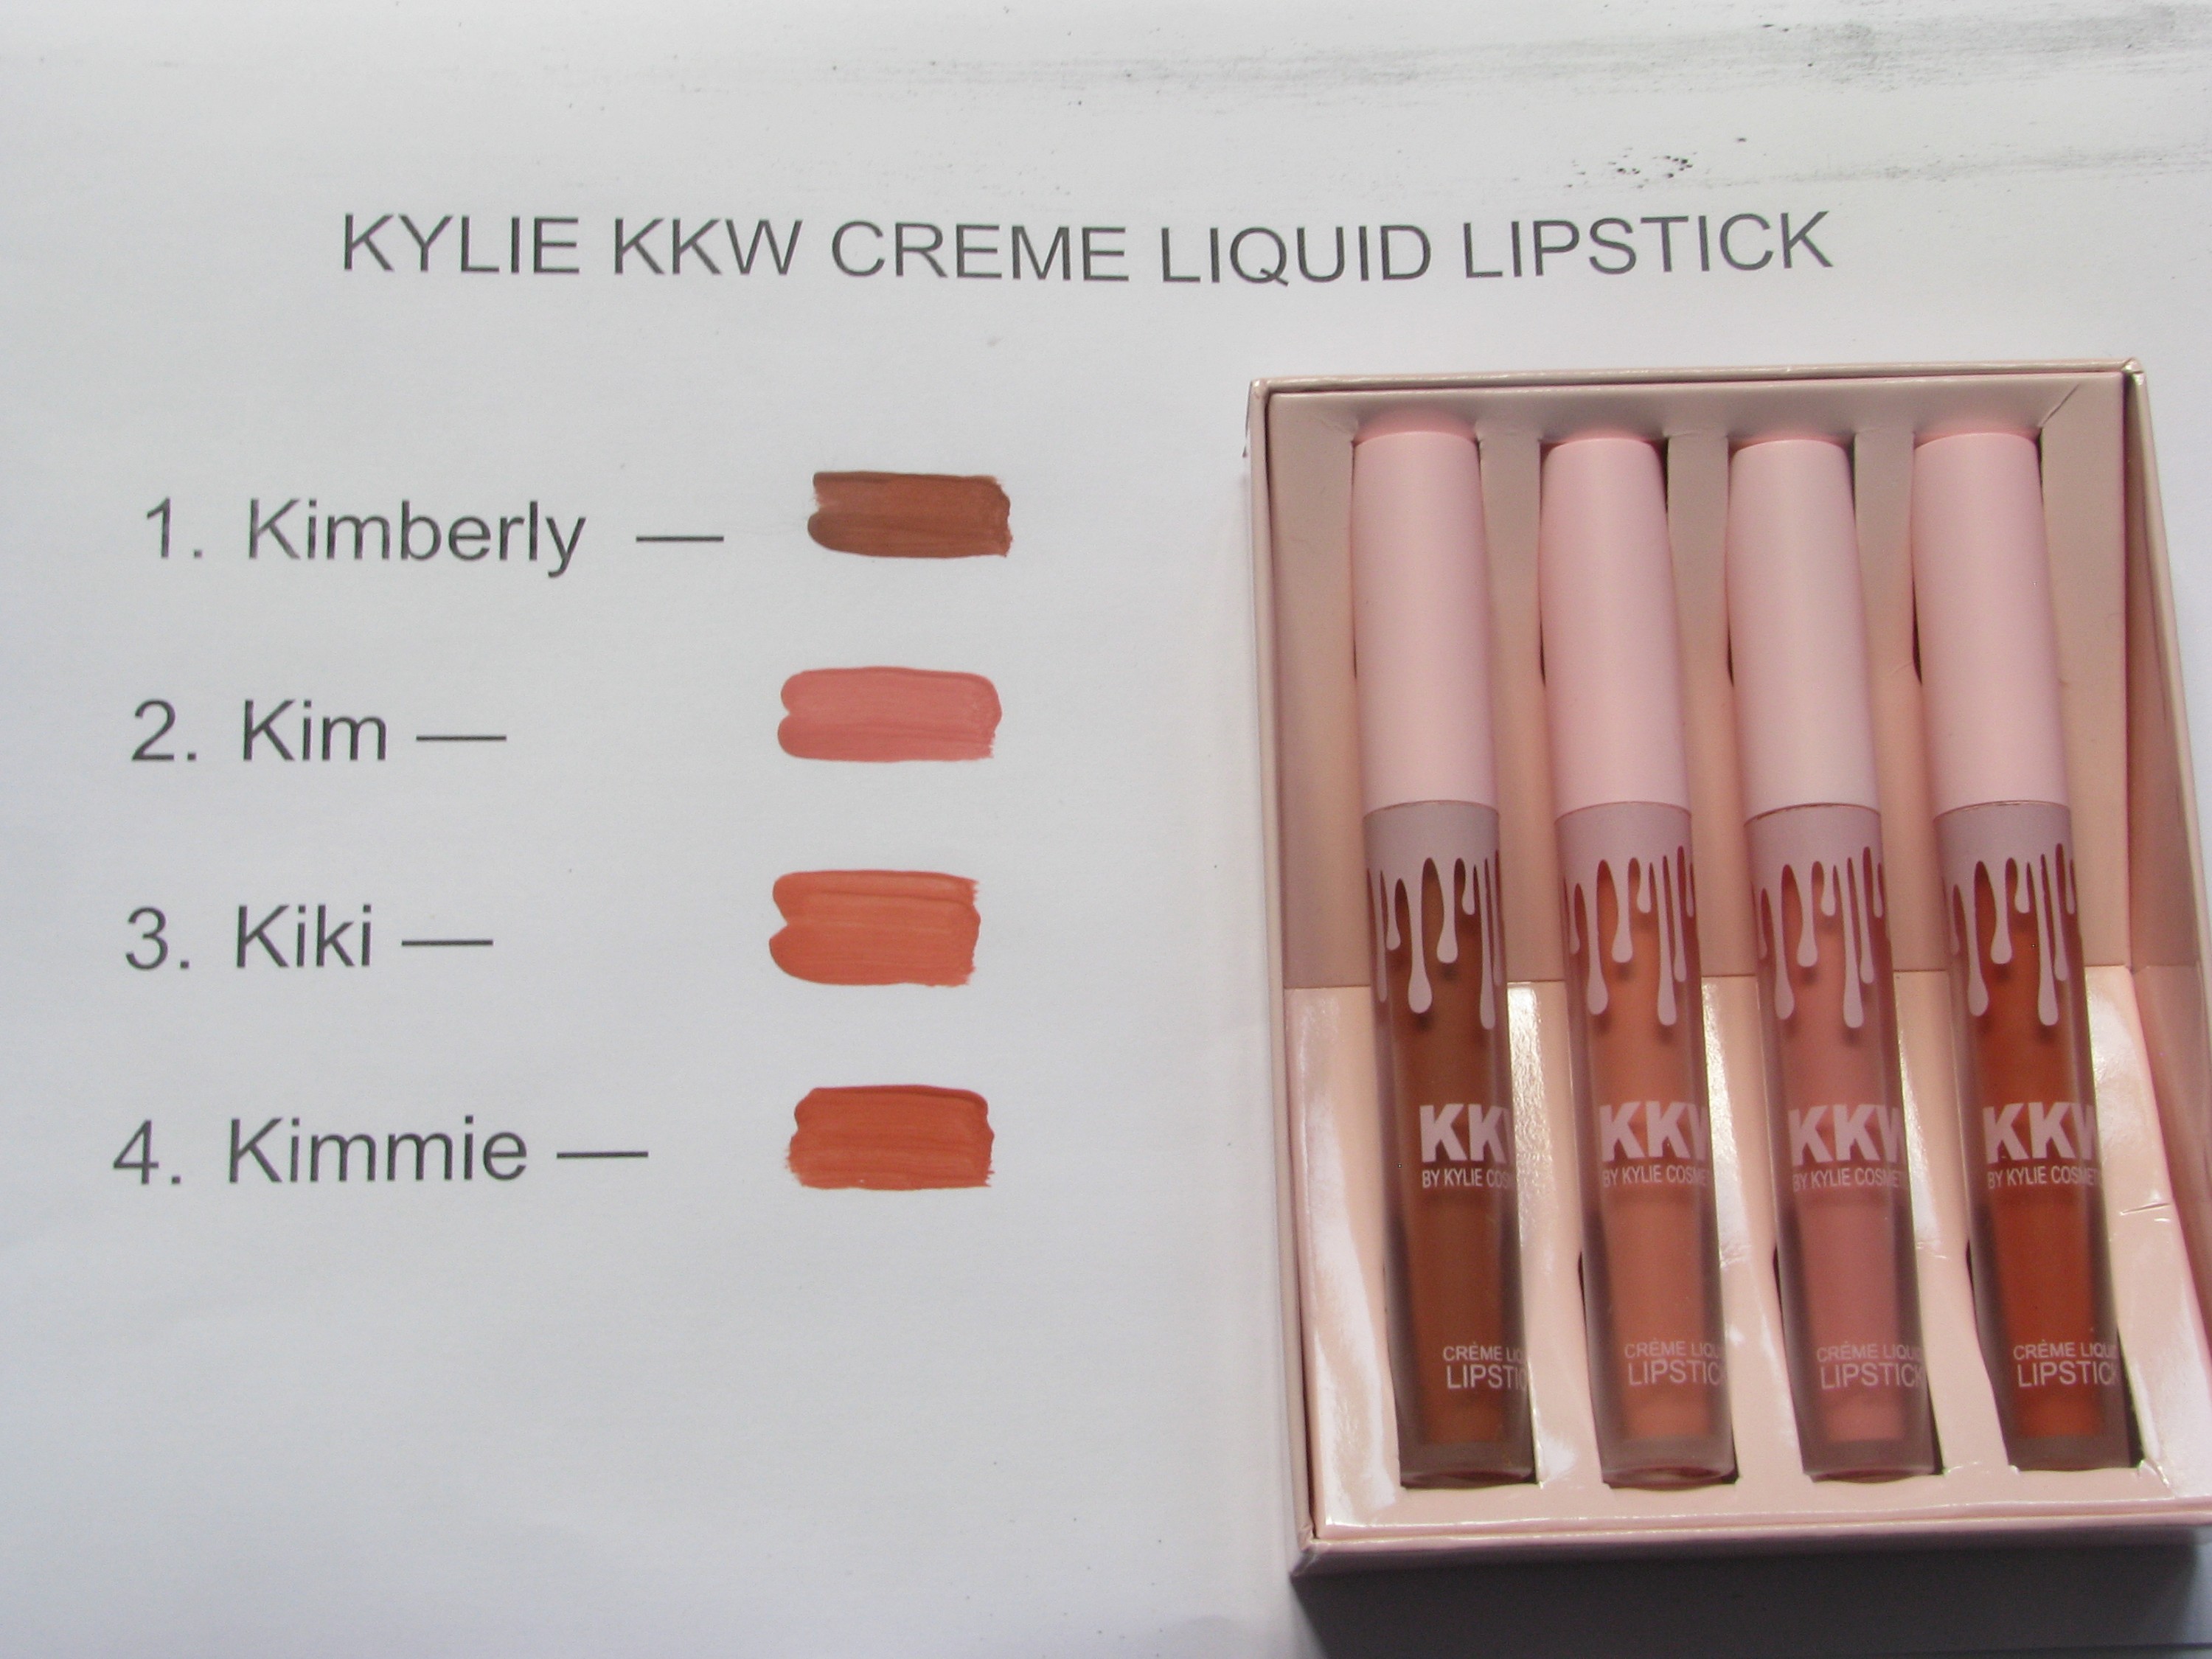 Kylie kkw creme liquid lipstick.